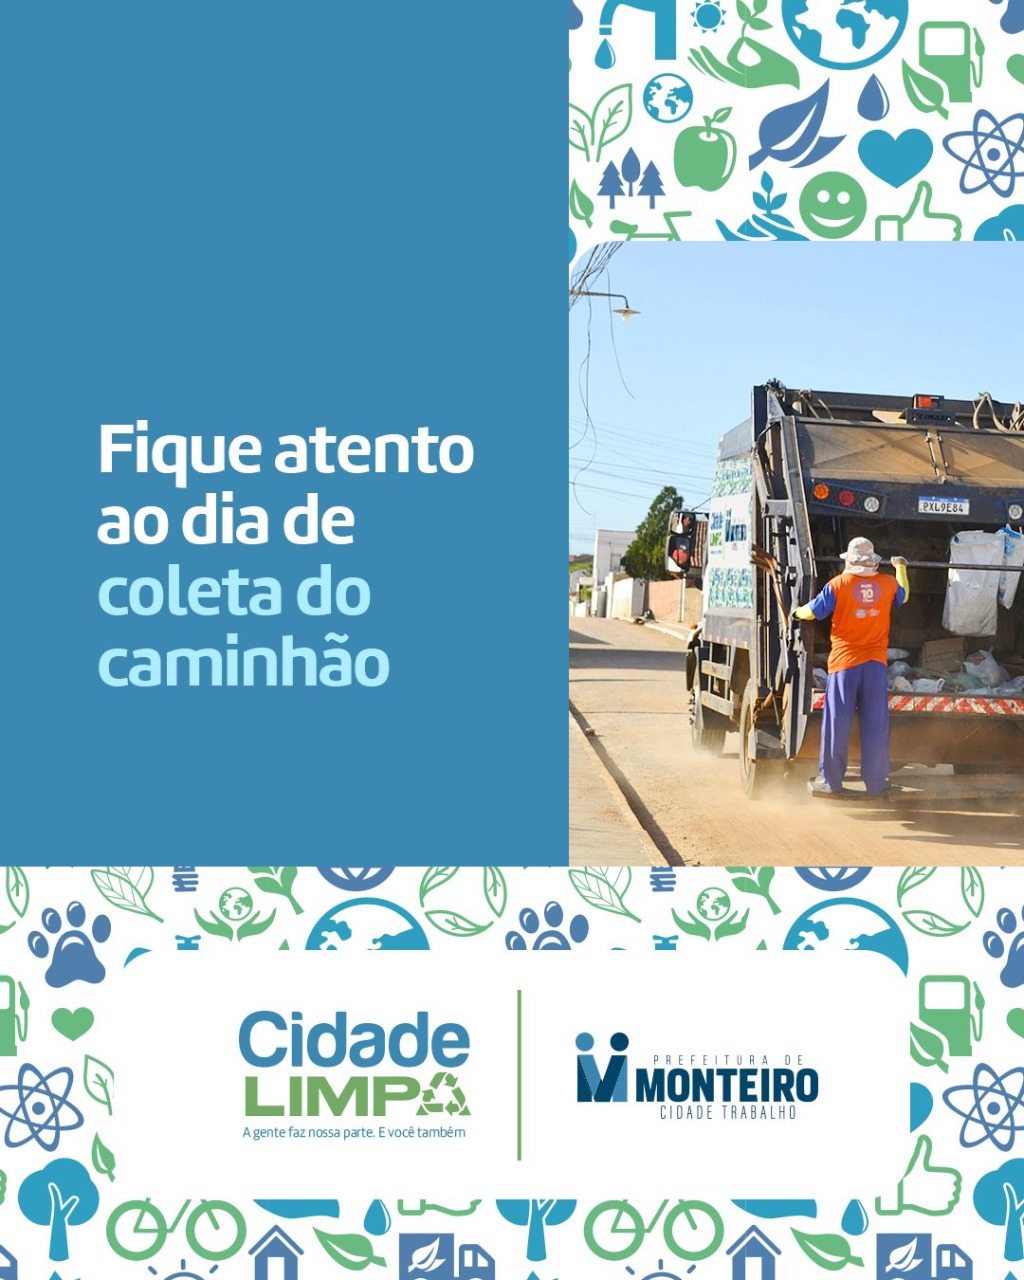 CCL Prefeitura de Monteiro lança campanha de orientação de limpeza urbana e coleta de lixo